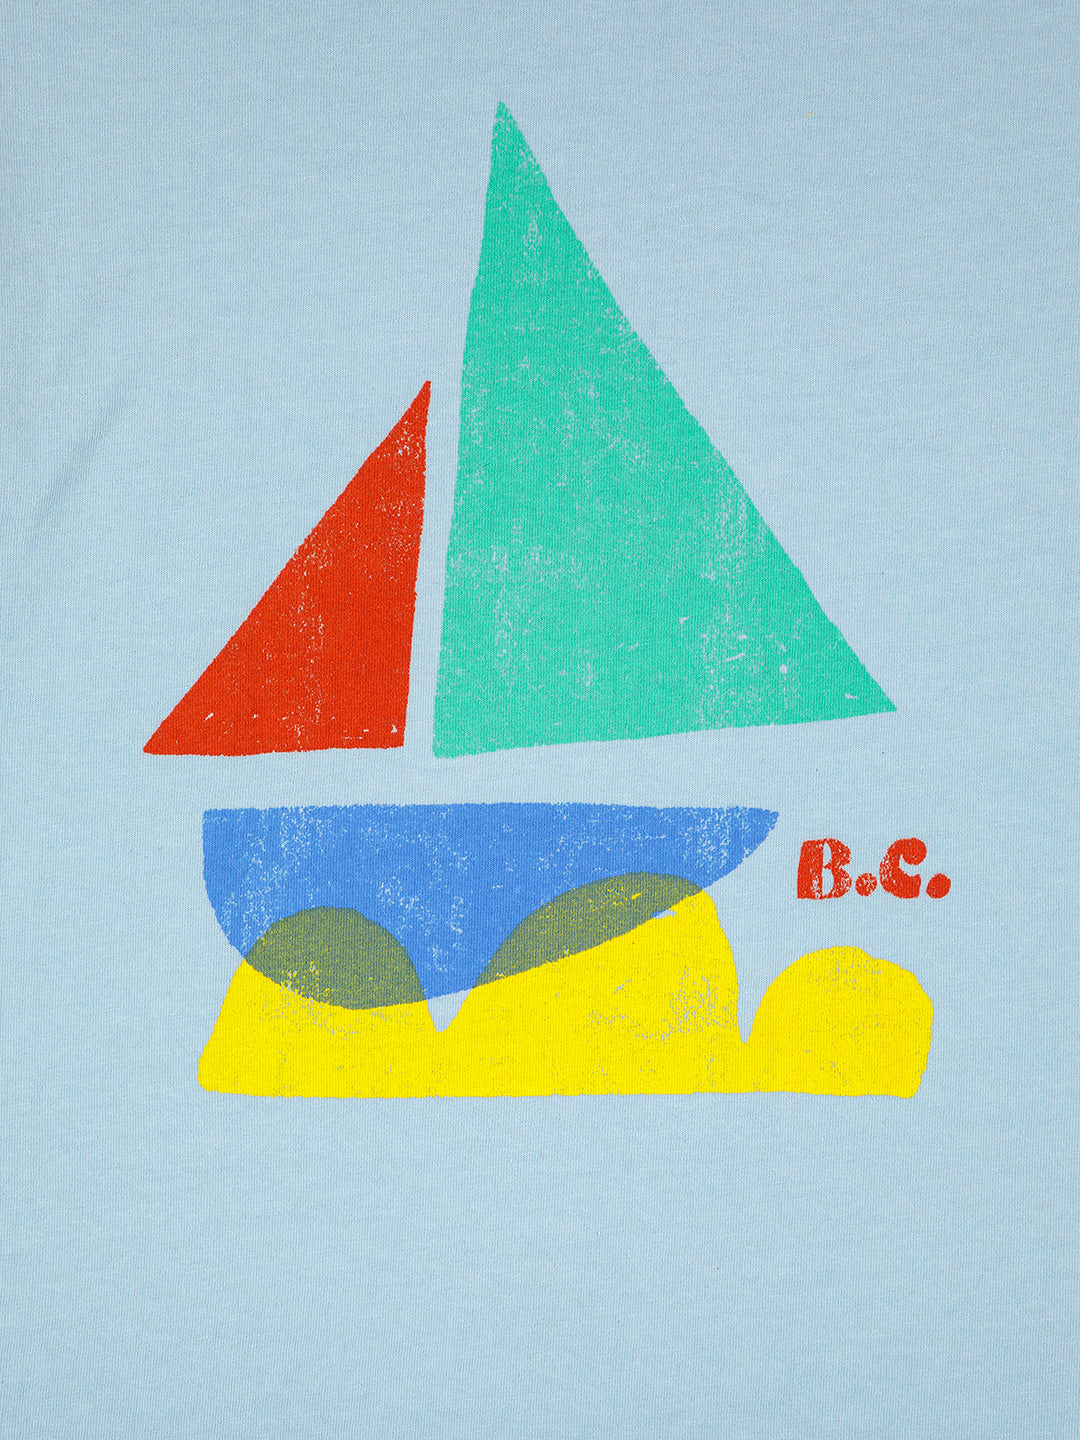 T-shirt Sail boat